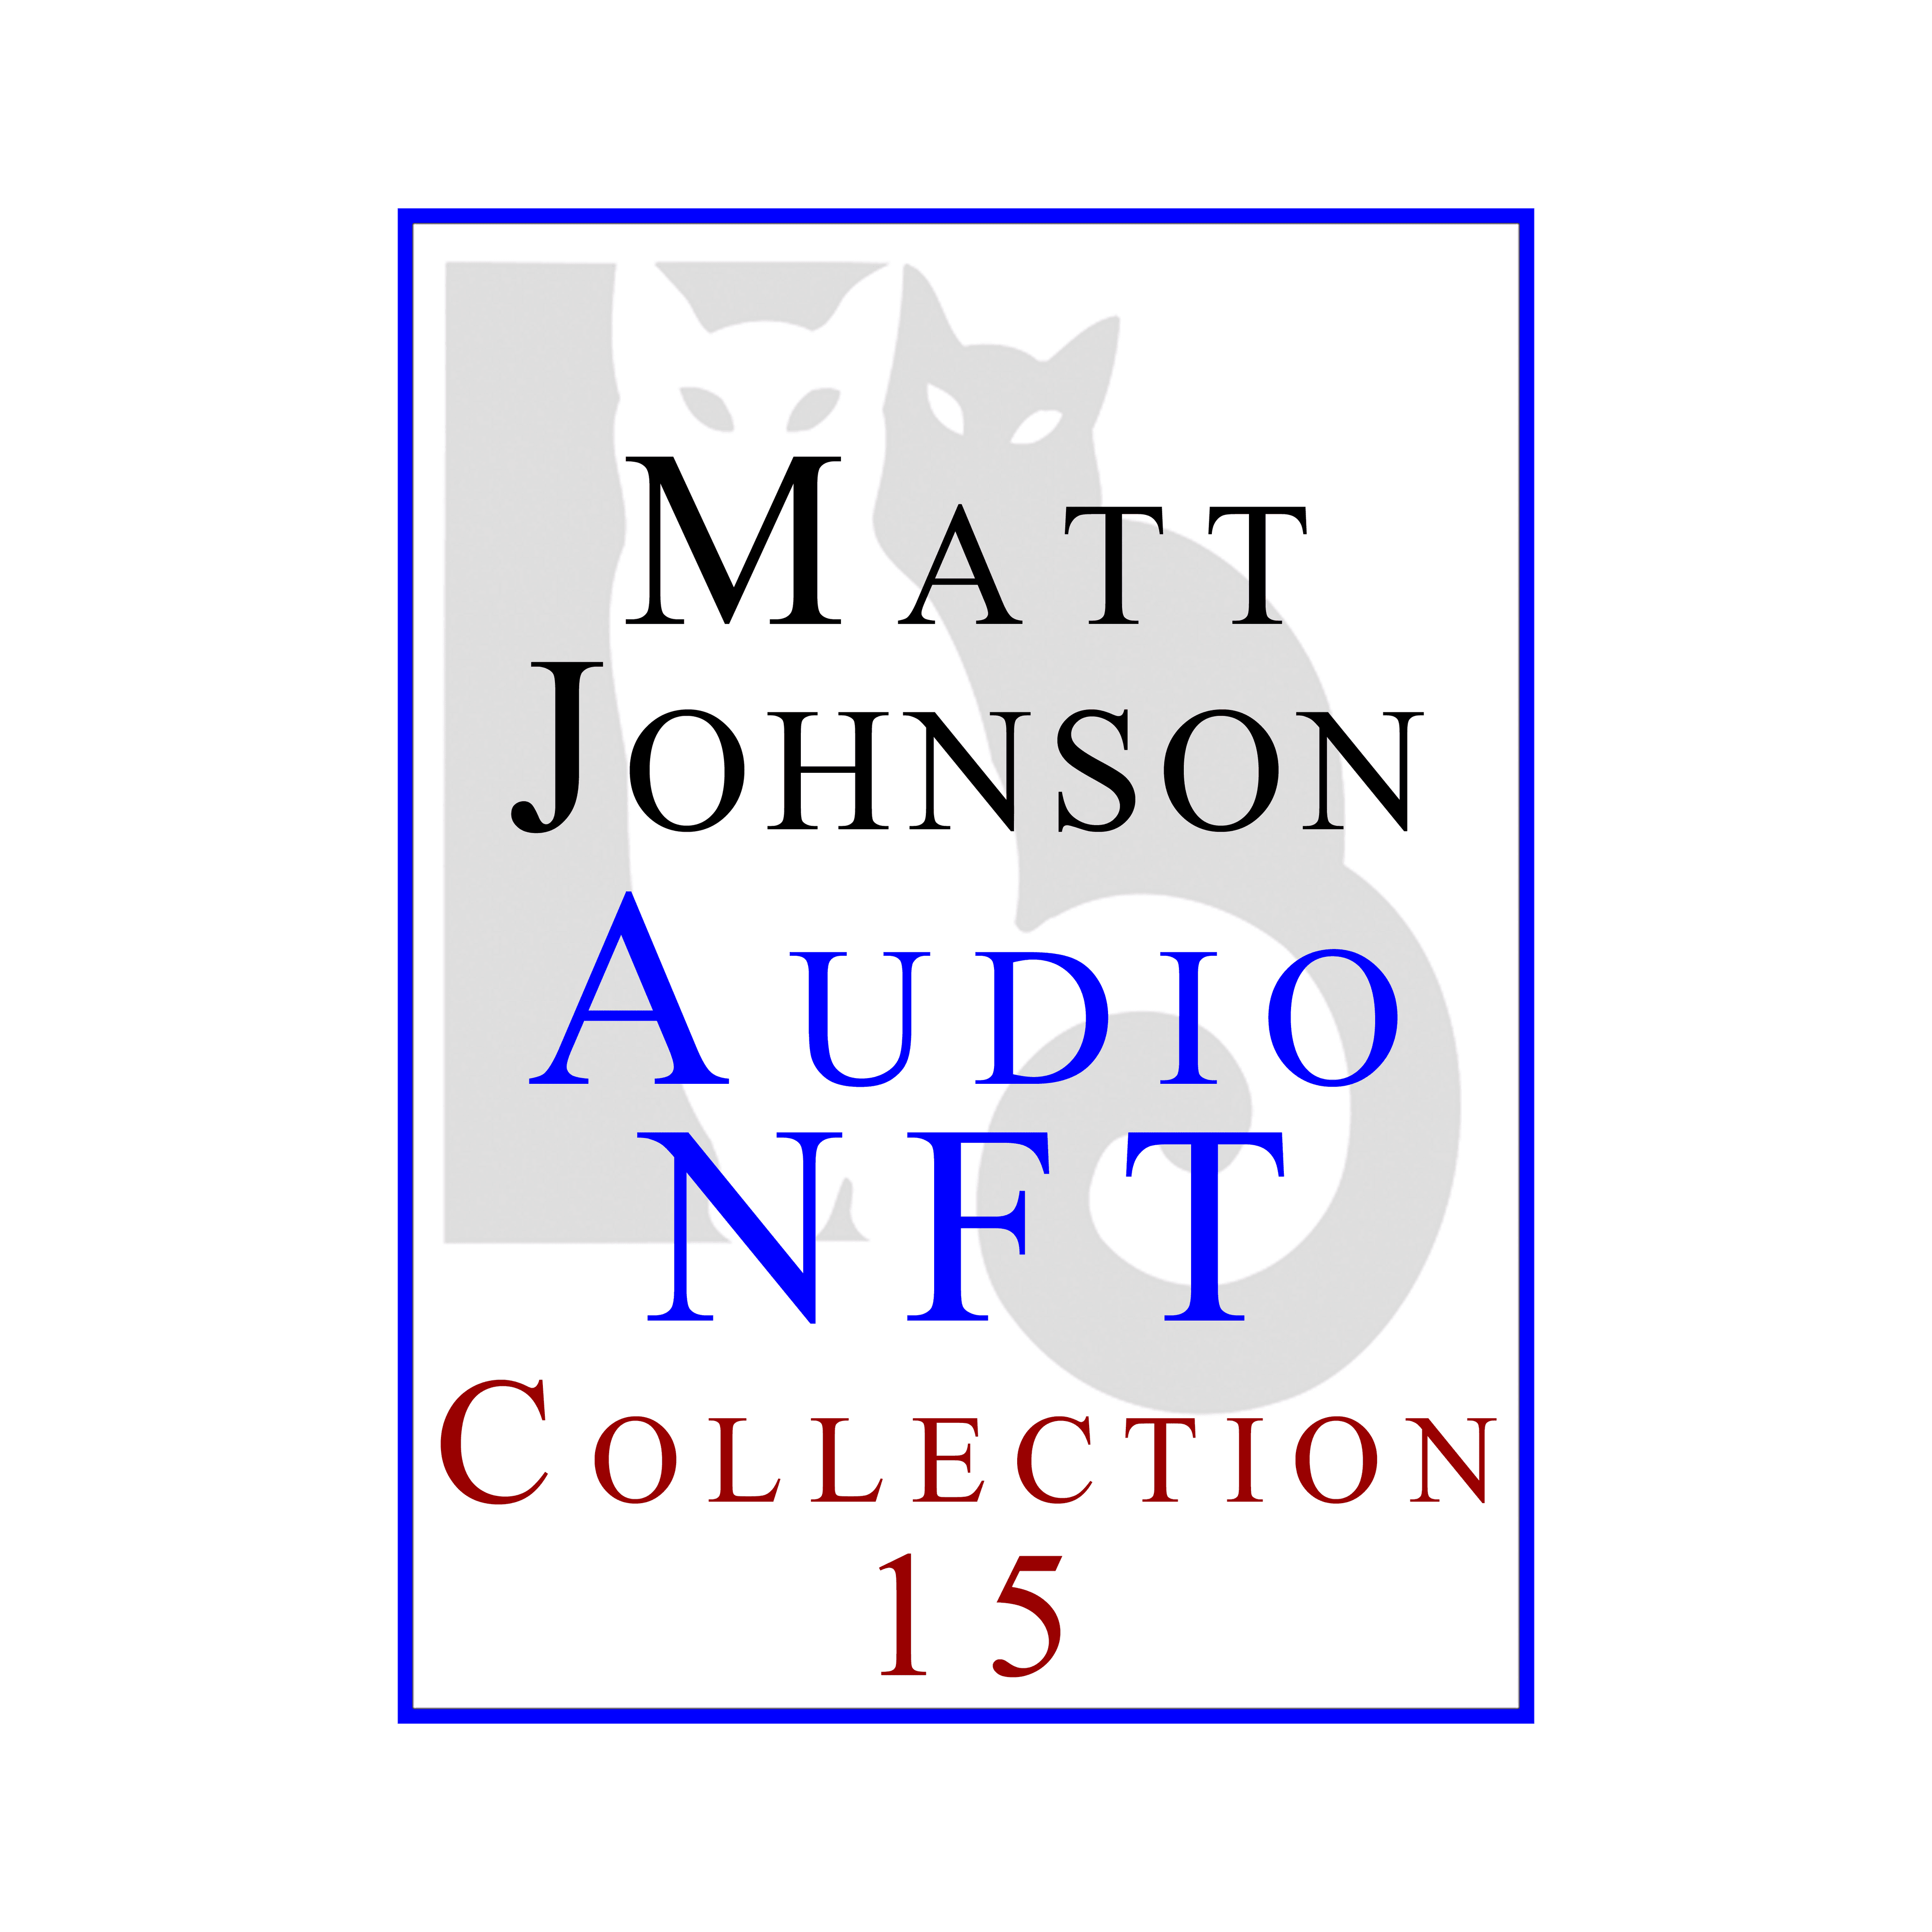 Matt Johnson Audio NFT ~ Collection 15